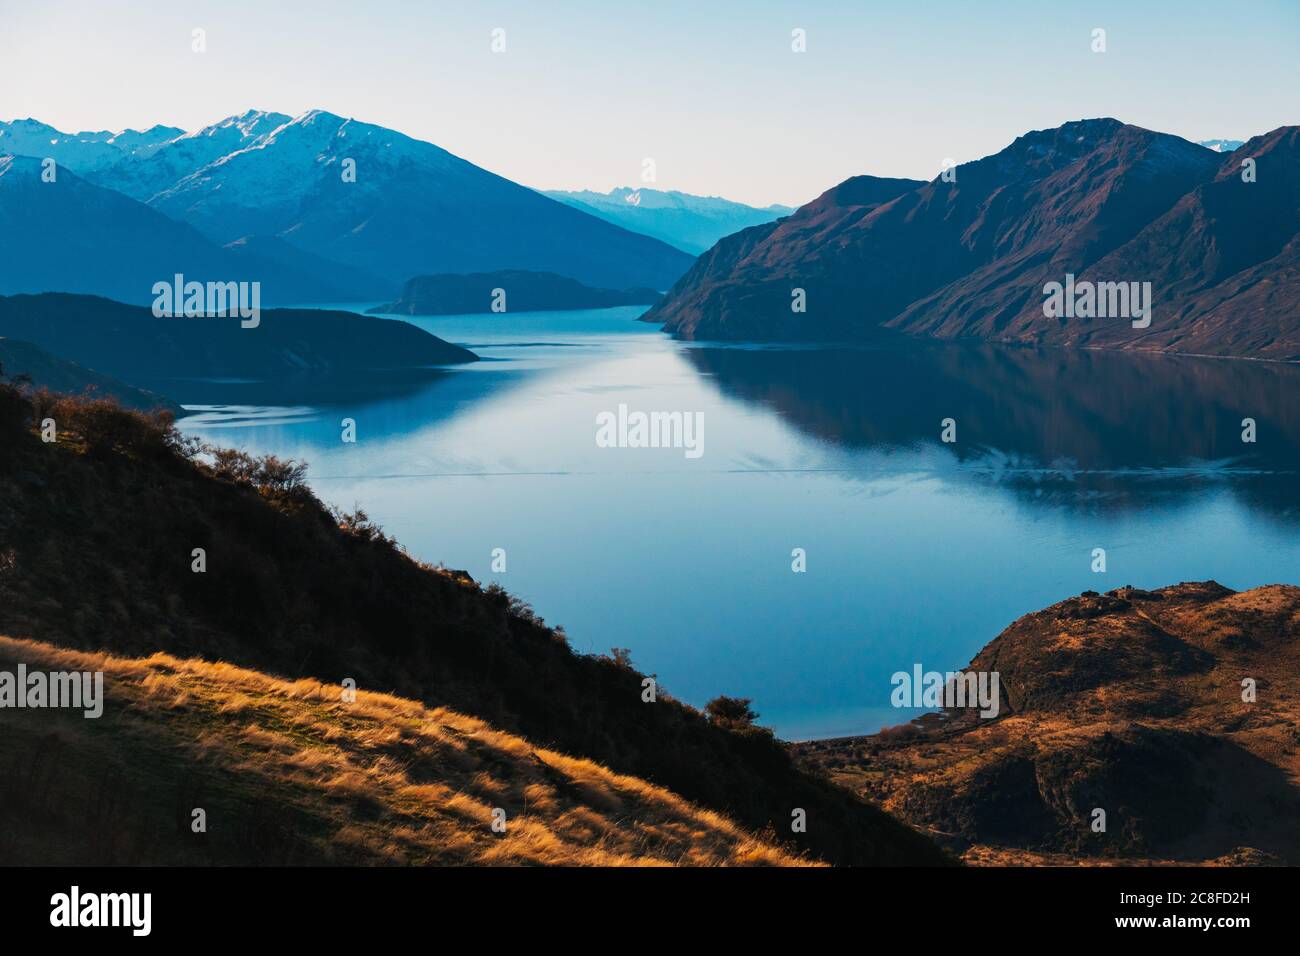 Les montagnes se reflètent à la surface d'un lac Wanaka incroyablement immobile, lors d'une journée calme et claire dans l'île du Sud de la Nouvelle-Zélande Banque D'Images